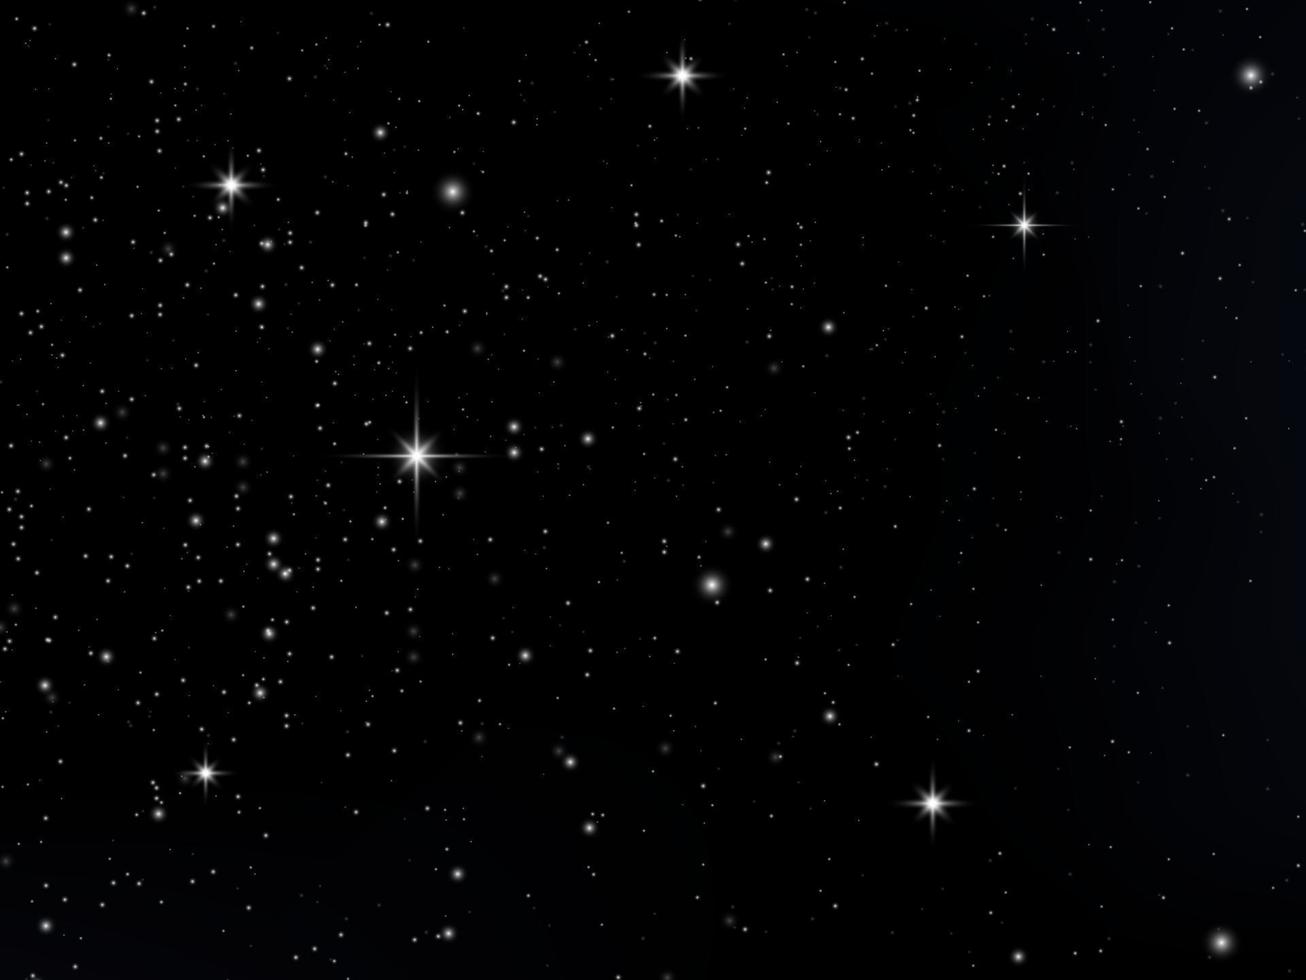 nacht schijnend sterrenhemel lucht, blauw ruimte achtergrond met sterren, ruimte. mooi nacht lucht. vector